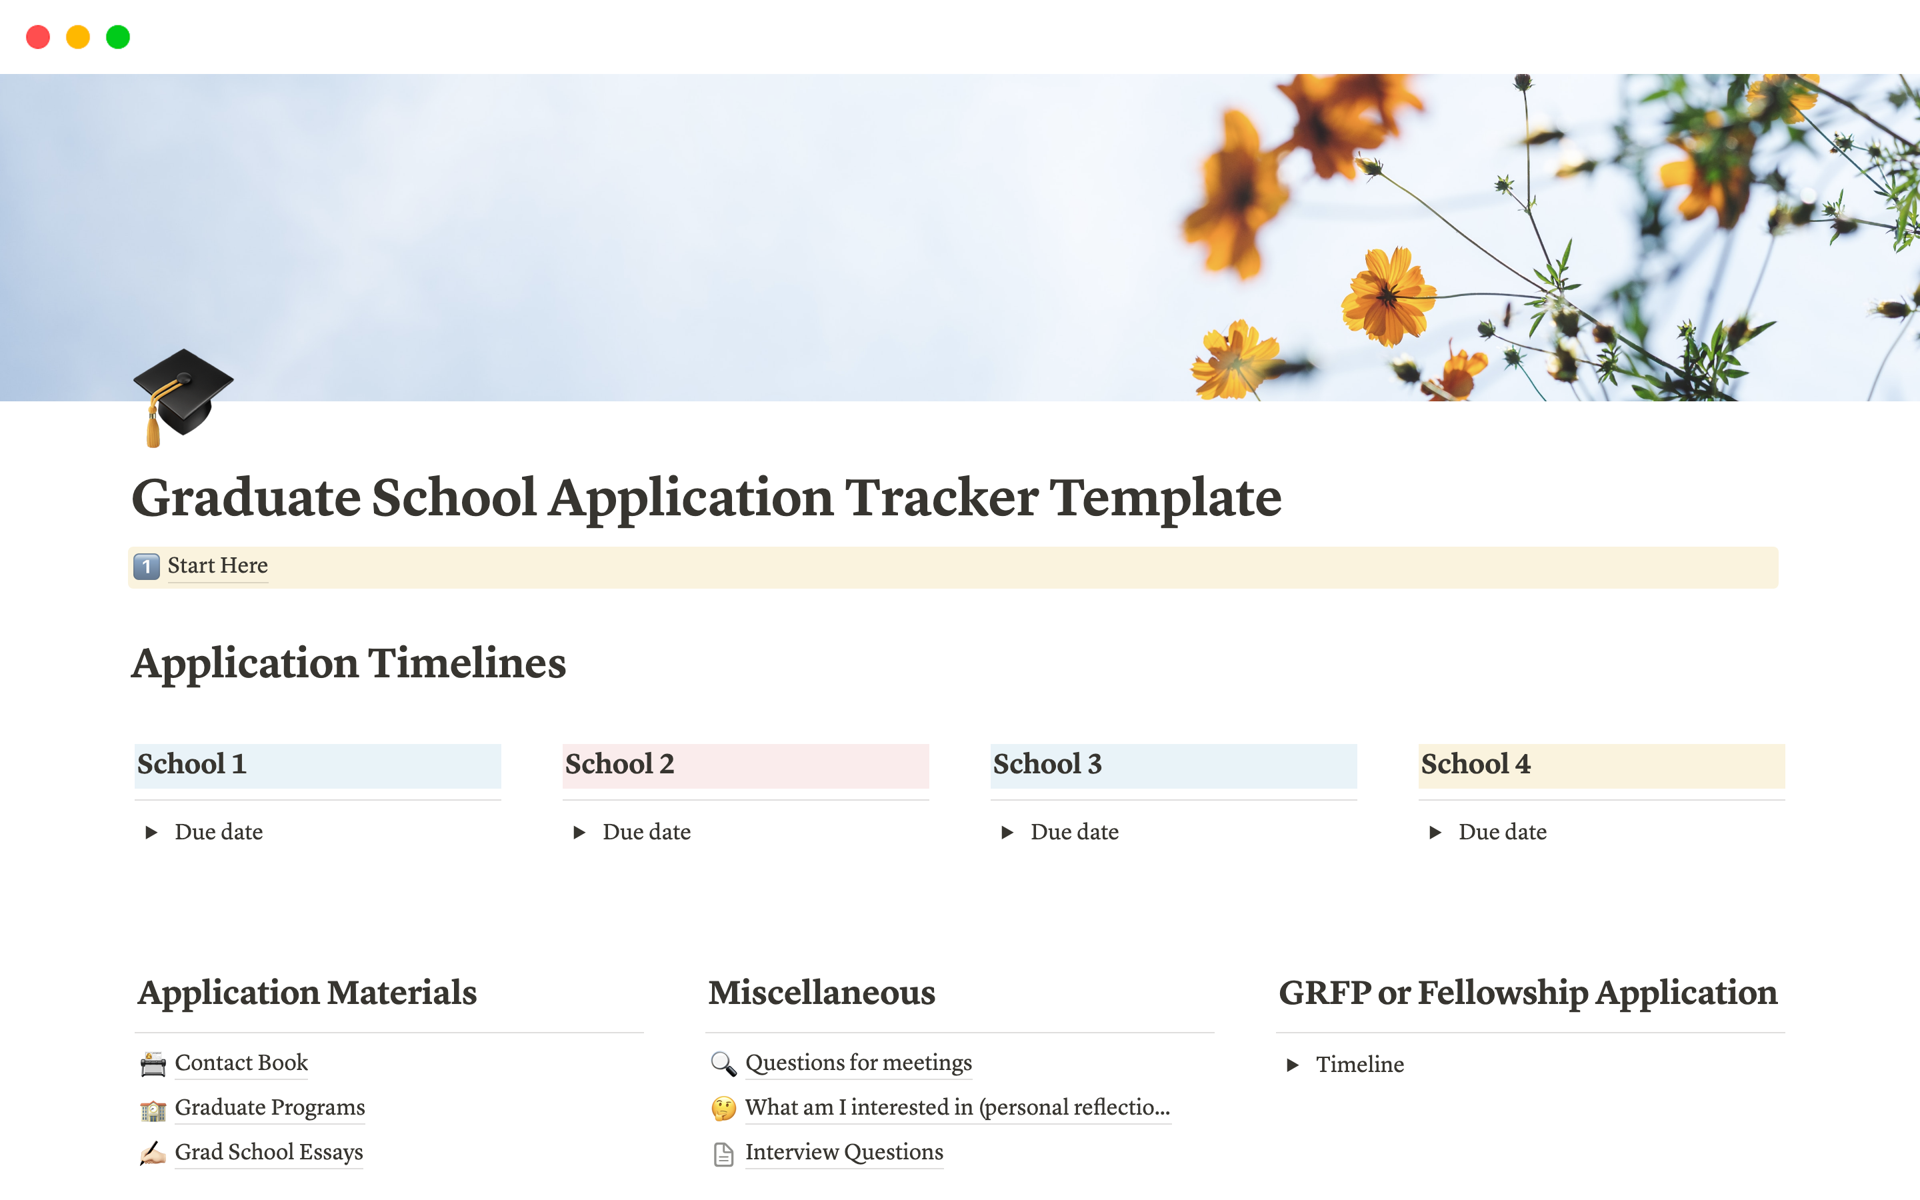 Uma prévia do modelo para Graduate School Application Tracker